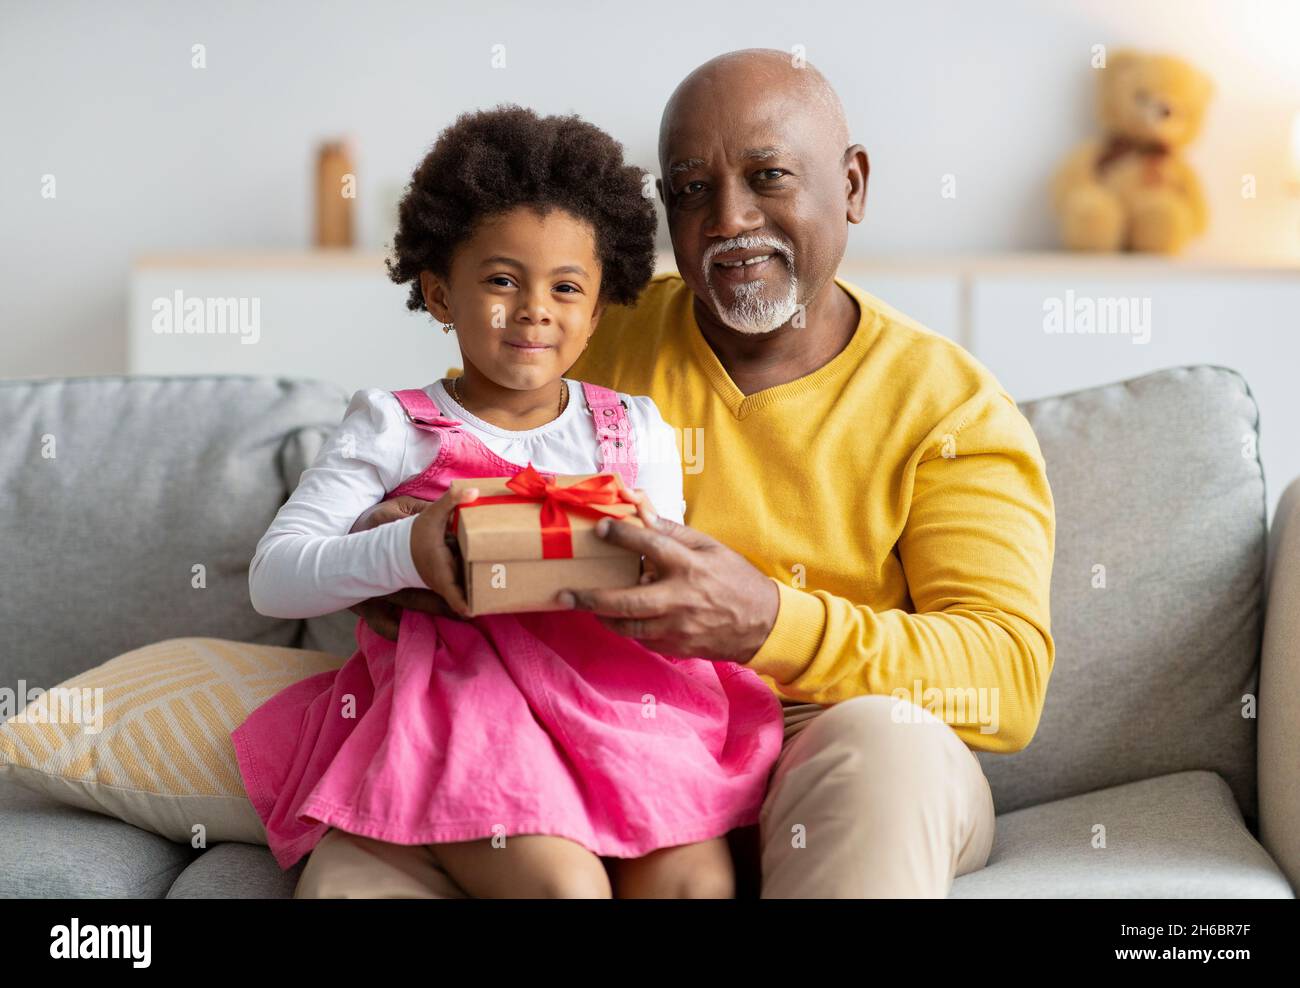 Allegra ragazza afroamericana si siede sulle ginocchia dell'uomo anziano e tiene il regalo dal suo nonno nell'interno del soggiorno. Festeggiamo il compleanno, fami Foto Stock